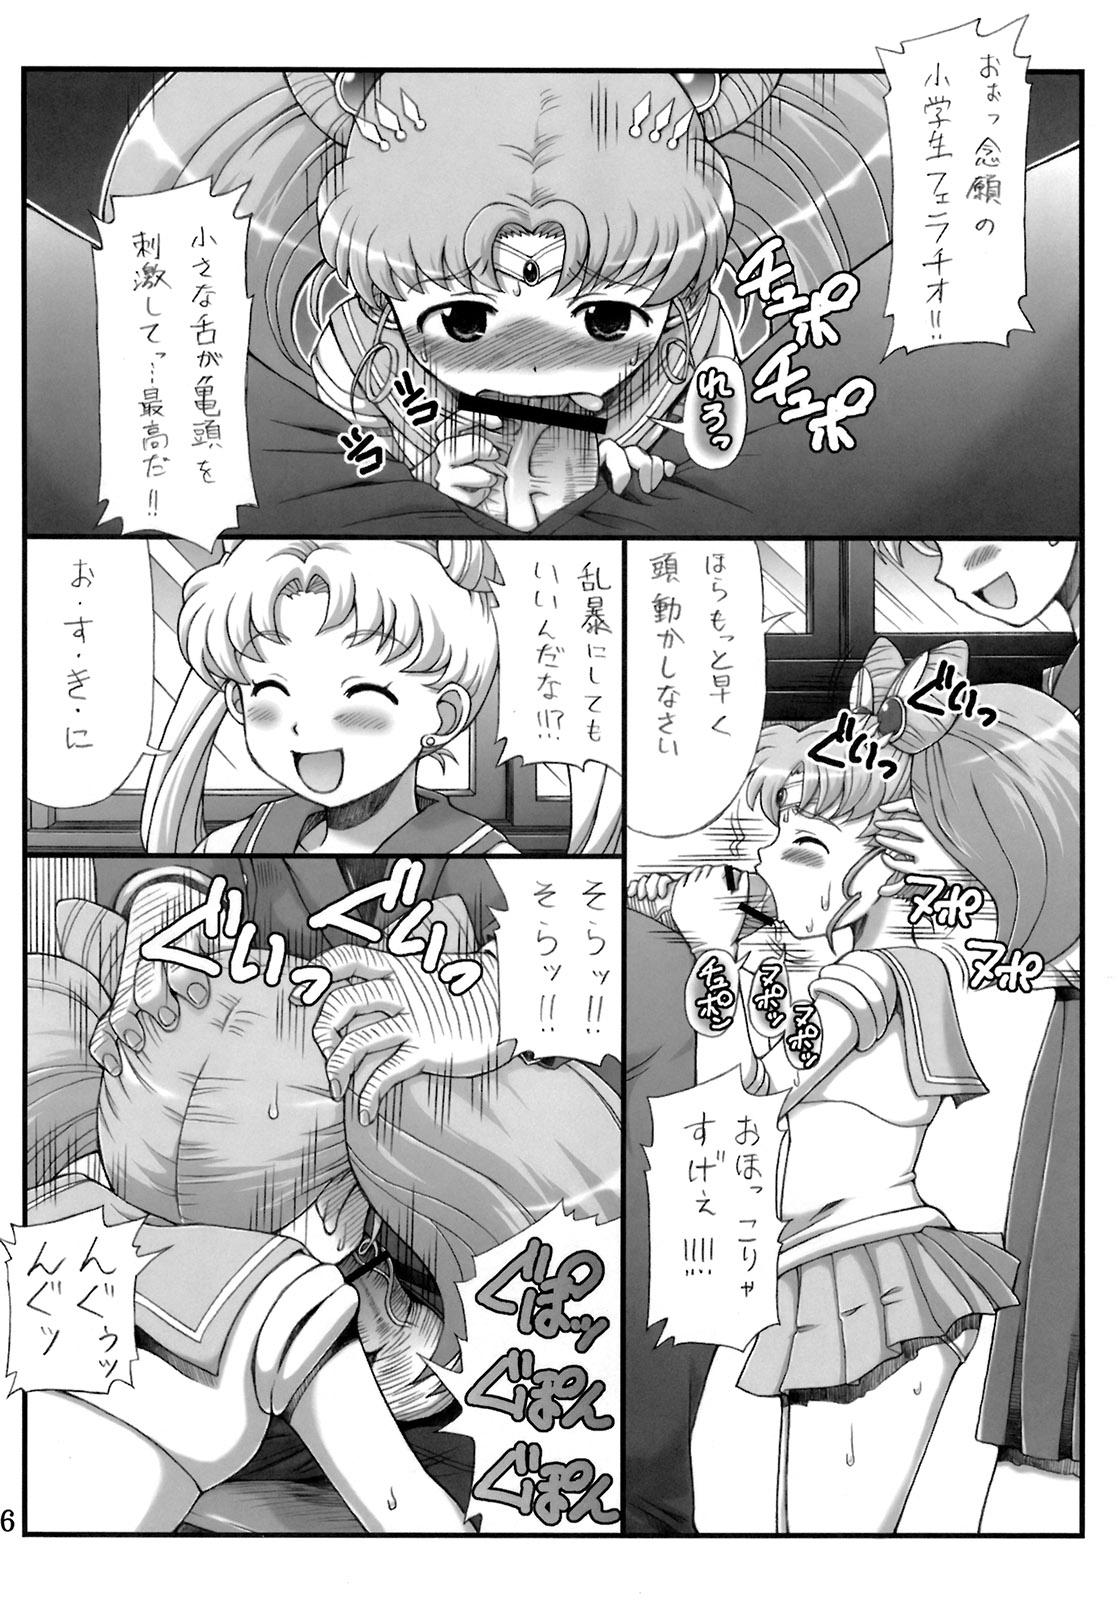 Tinytits Lovely Battle Suit HALF & HALF - Sailor moon Sakura taisen Blackdick - Page 5